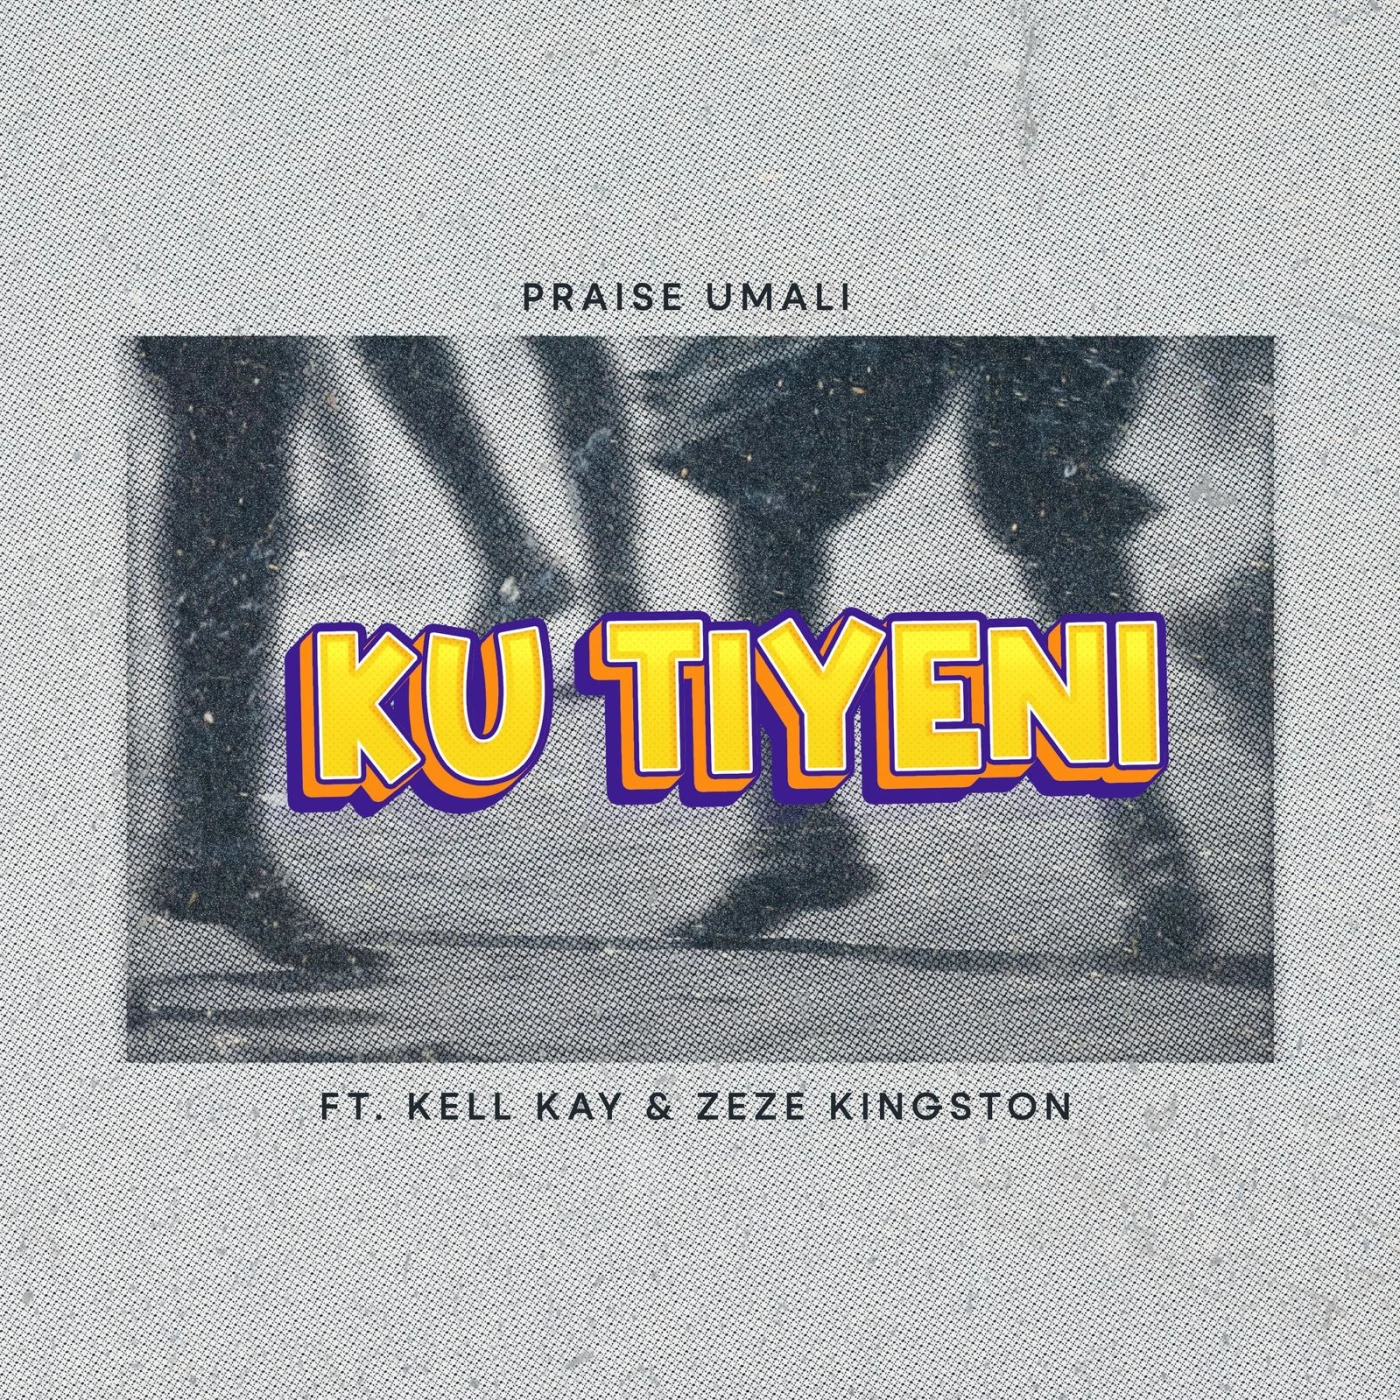 ku-tiyeni-ft-kell-kay--zeze-kingston-praise-umali-Just Malawi Music